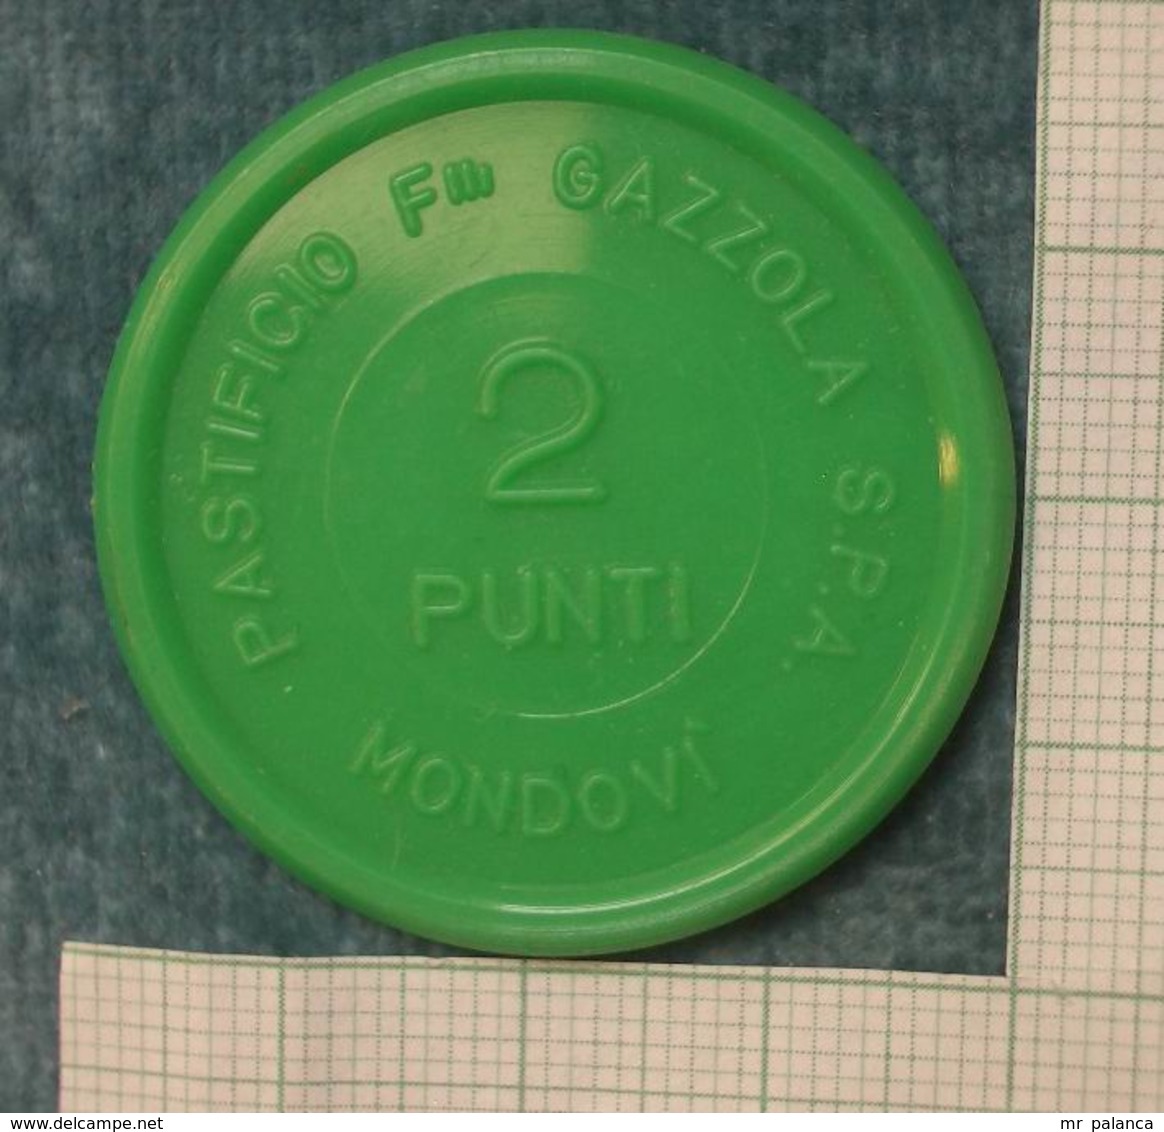 M_p> Gettone " PASTIFICIO F.LLI GAZZOLA S.P.A. MONDOVI' ( CN )  2 PUNTI " In Plastica Verde - Monetari/ Di Necessità